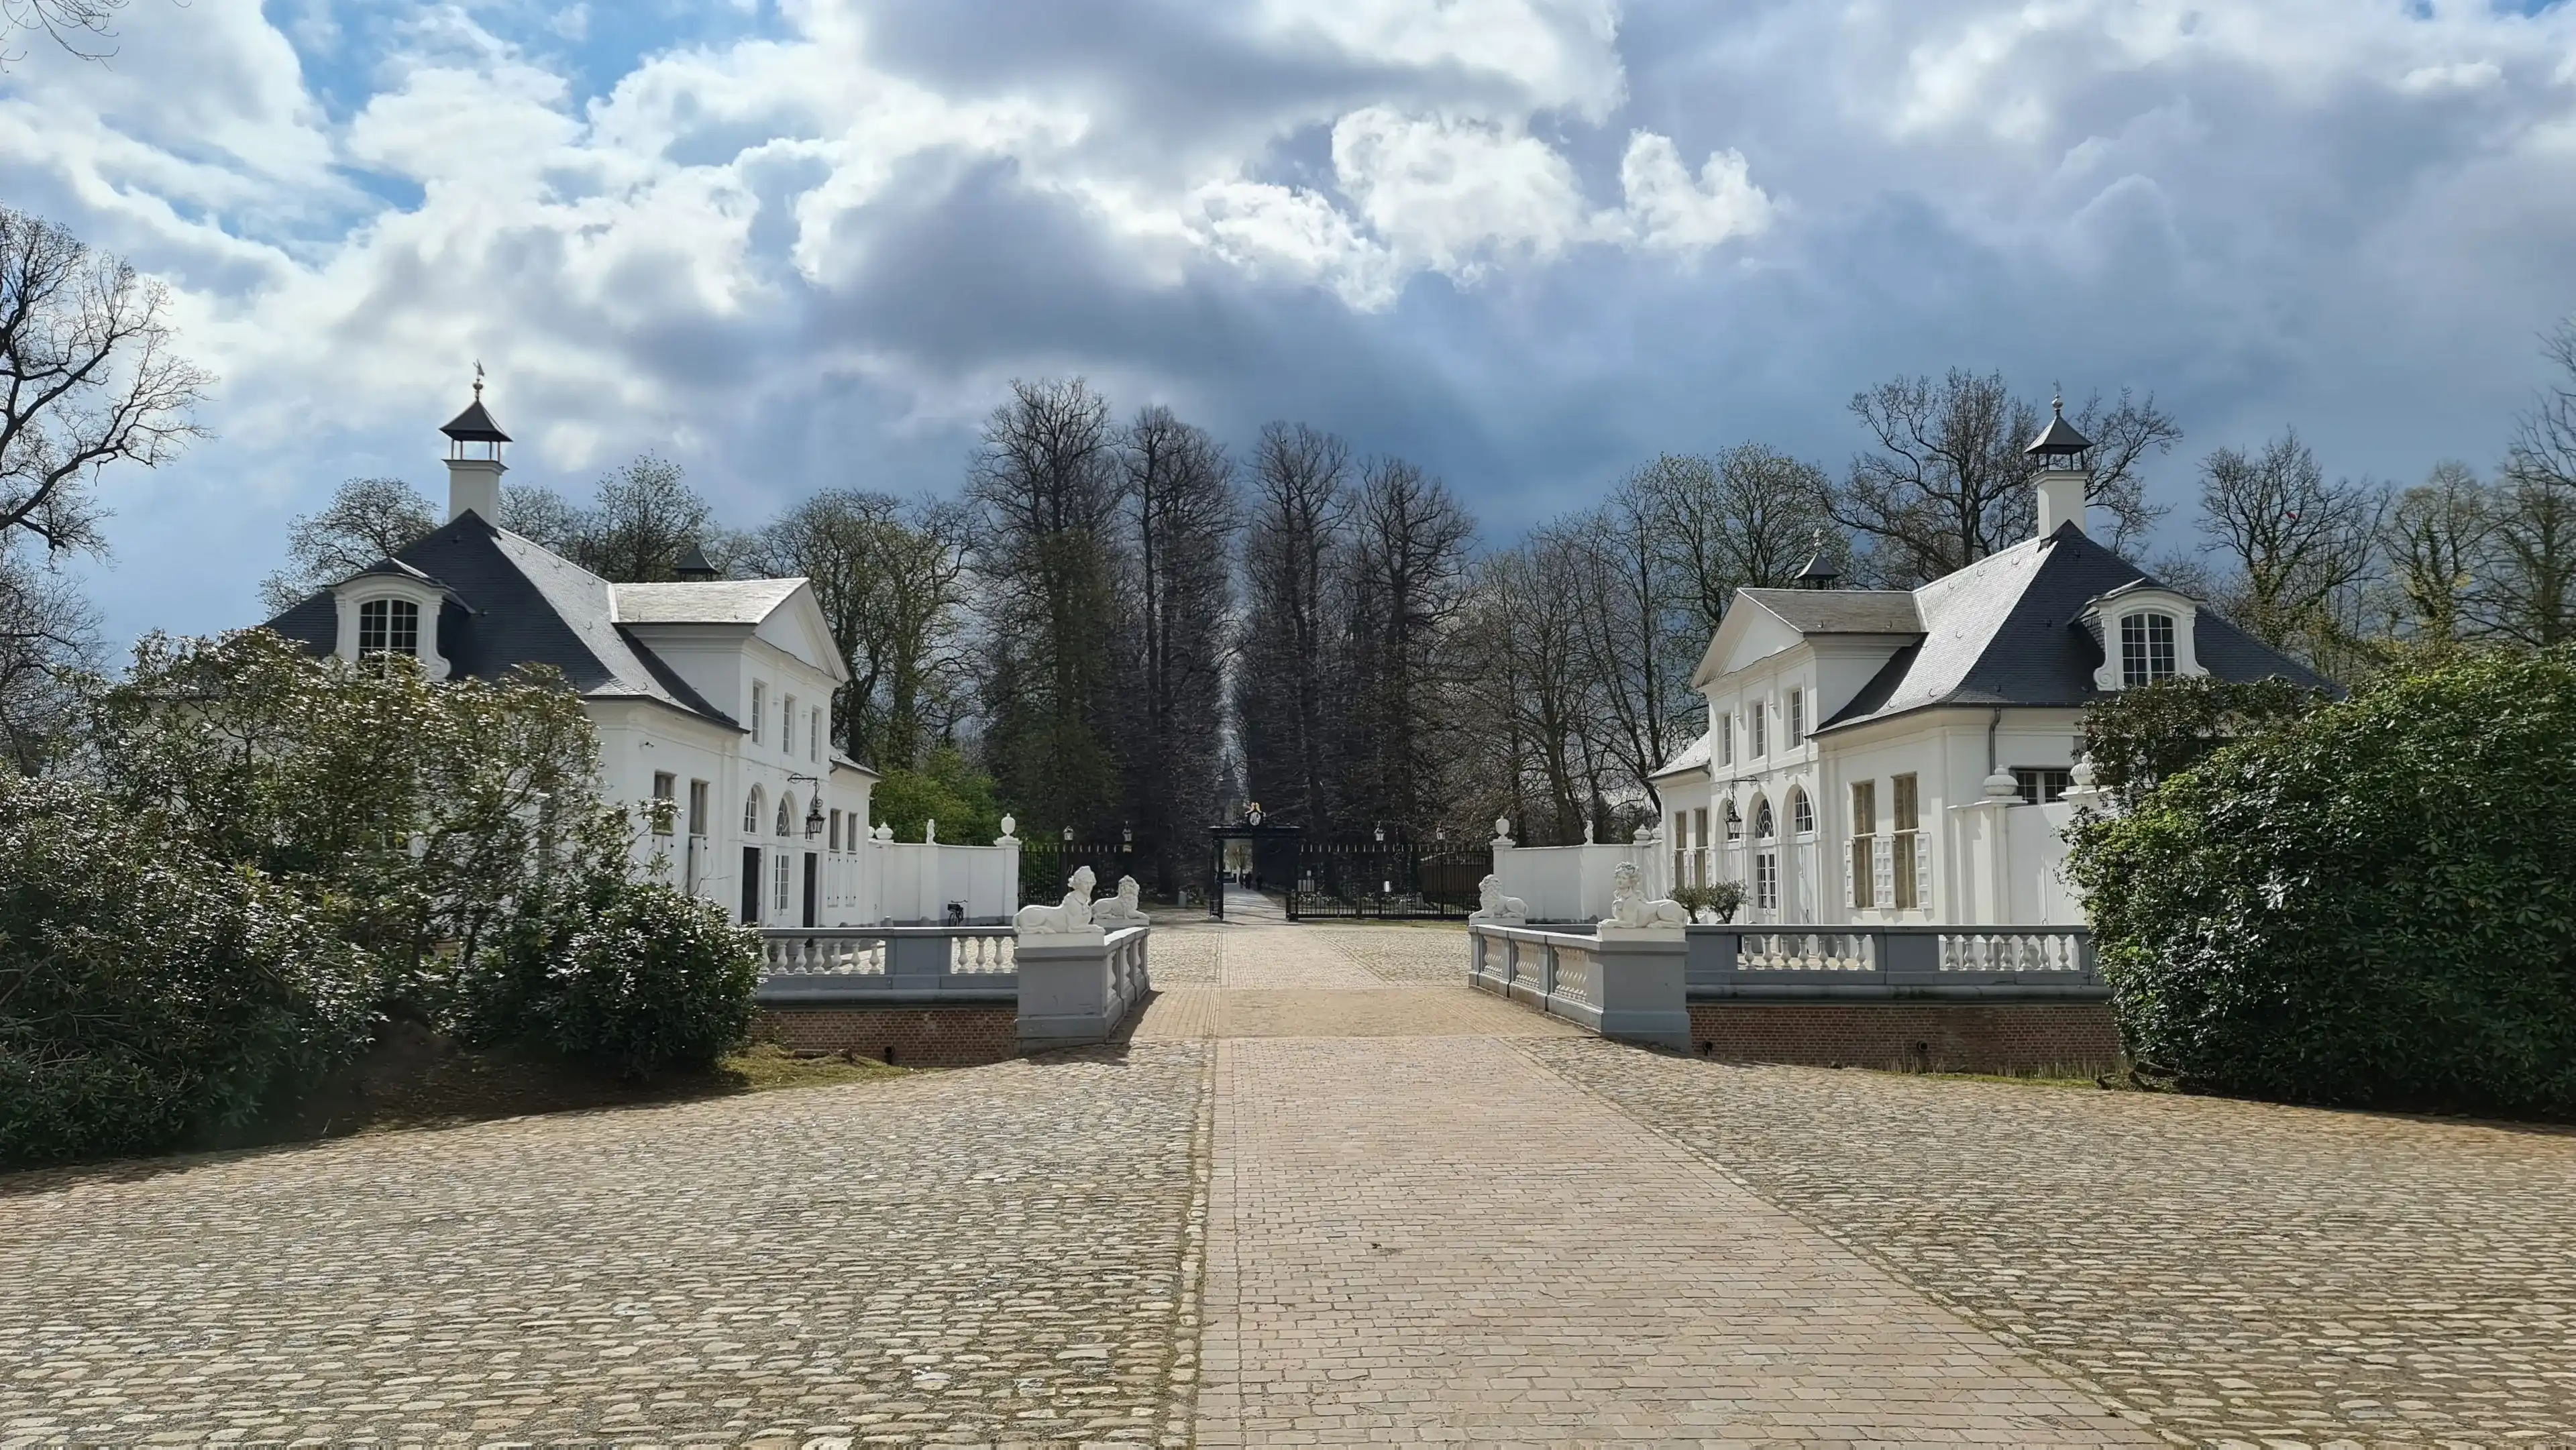 April 2021 - Edegem (Antwerp, Belgium): view of the neoclassicist castle Hof ter Linden